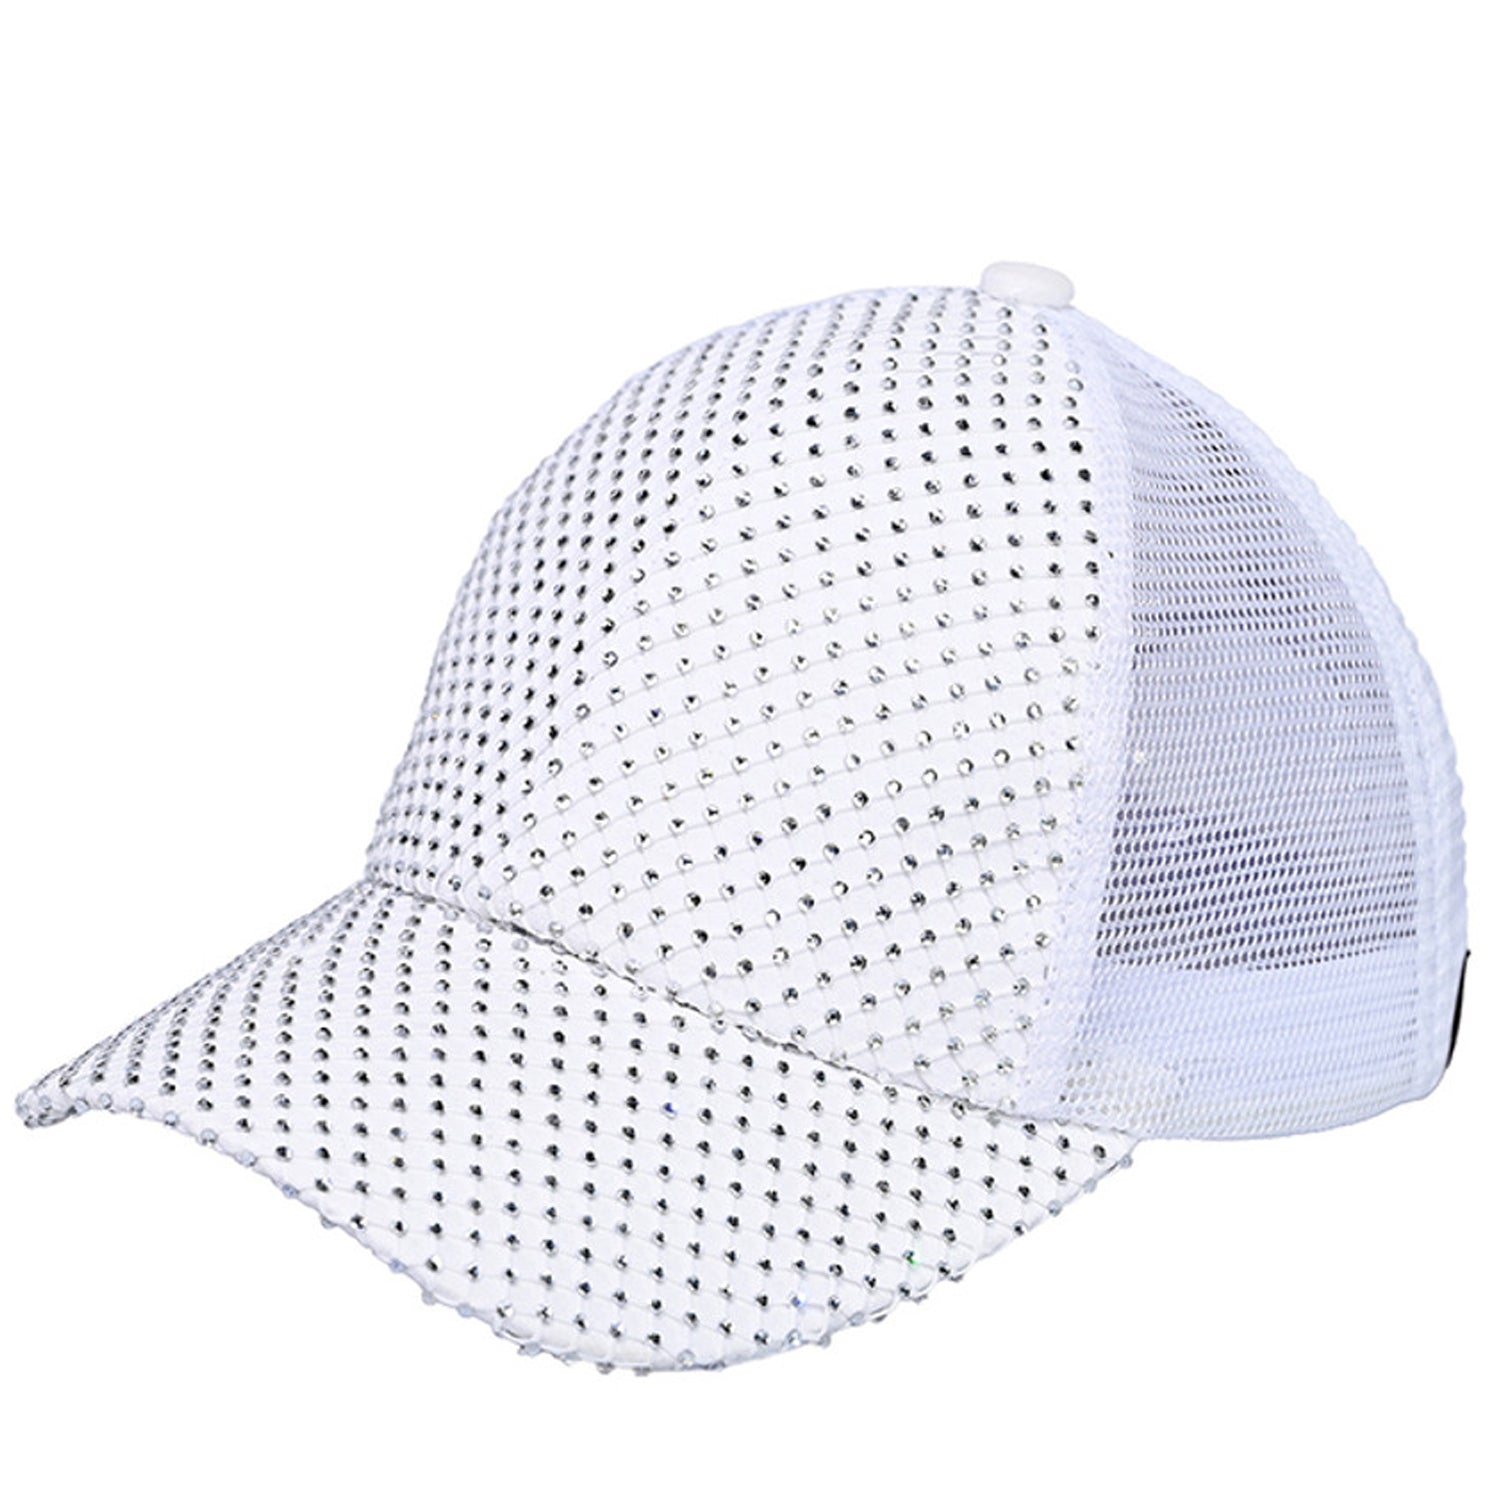 BAB-8040 WHITE CLEAR DIAMOND CAP